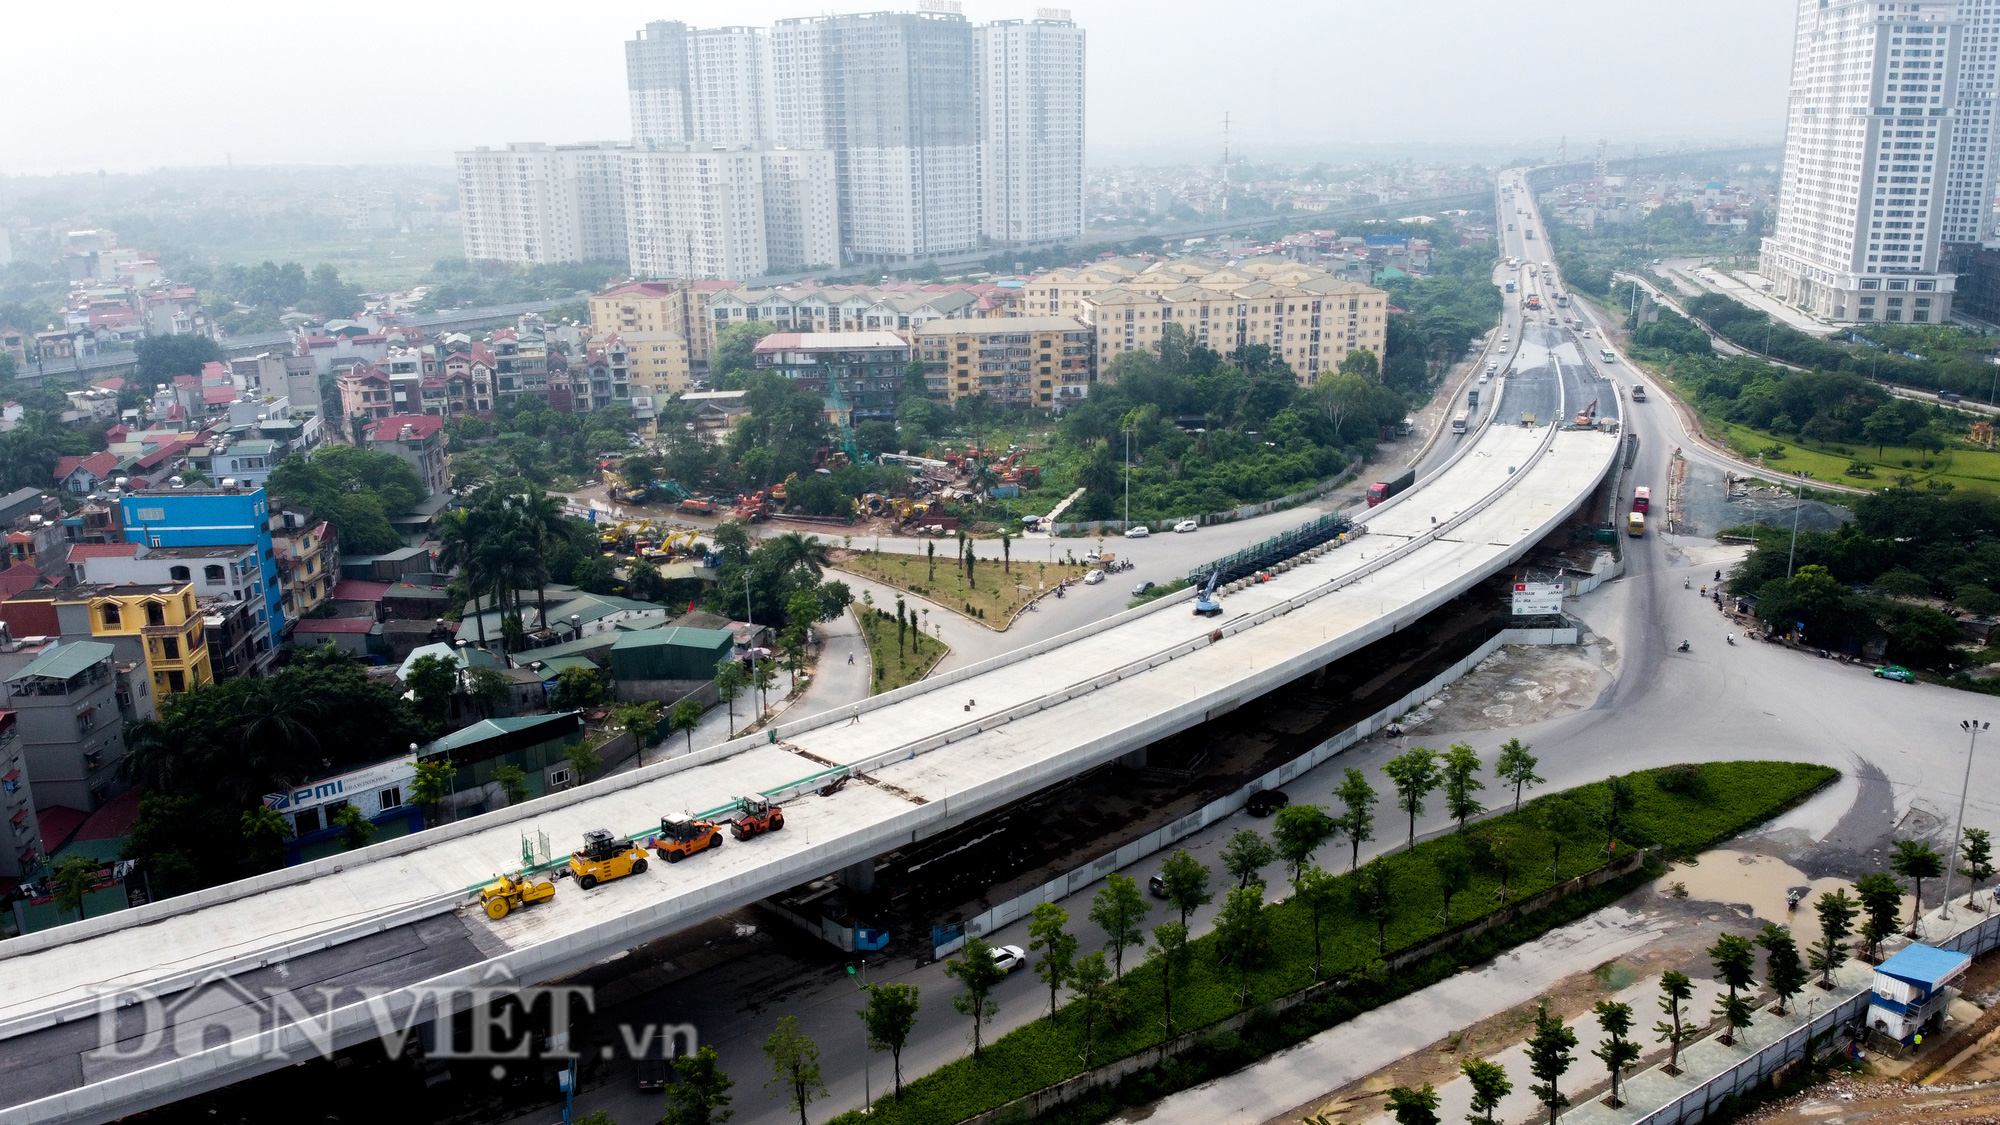 Hà Nội sắp có cầu cạn hơn 5000 tỷ nối cầu vượt Mai Dịch và cầu Thăng Long - Ảnh 7.